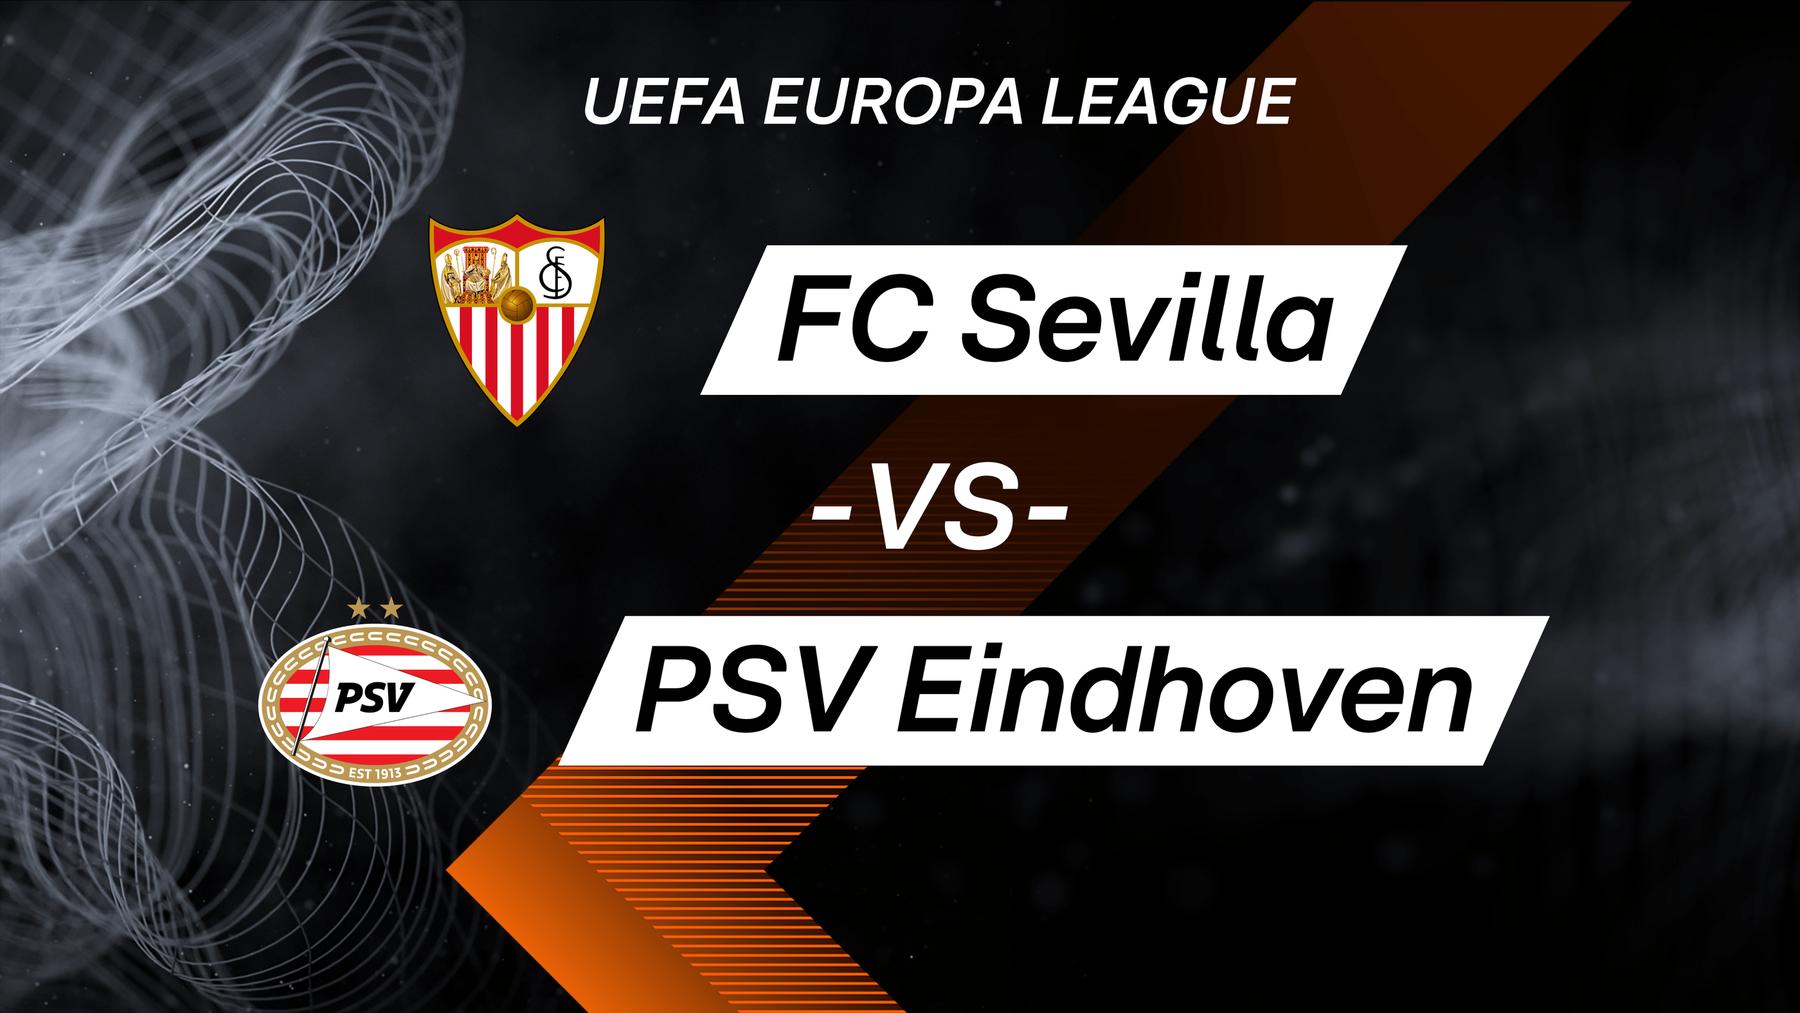 FC Sevilla vs. PSV Eindhoven